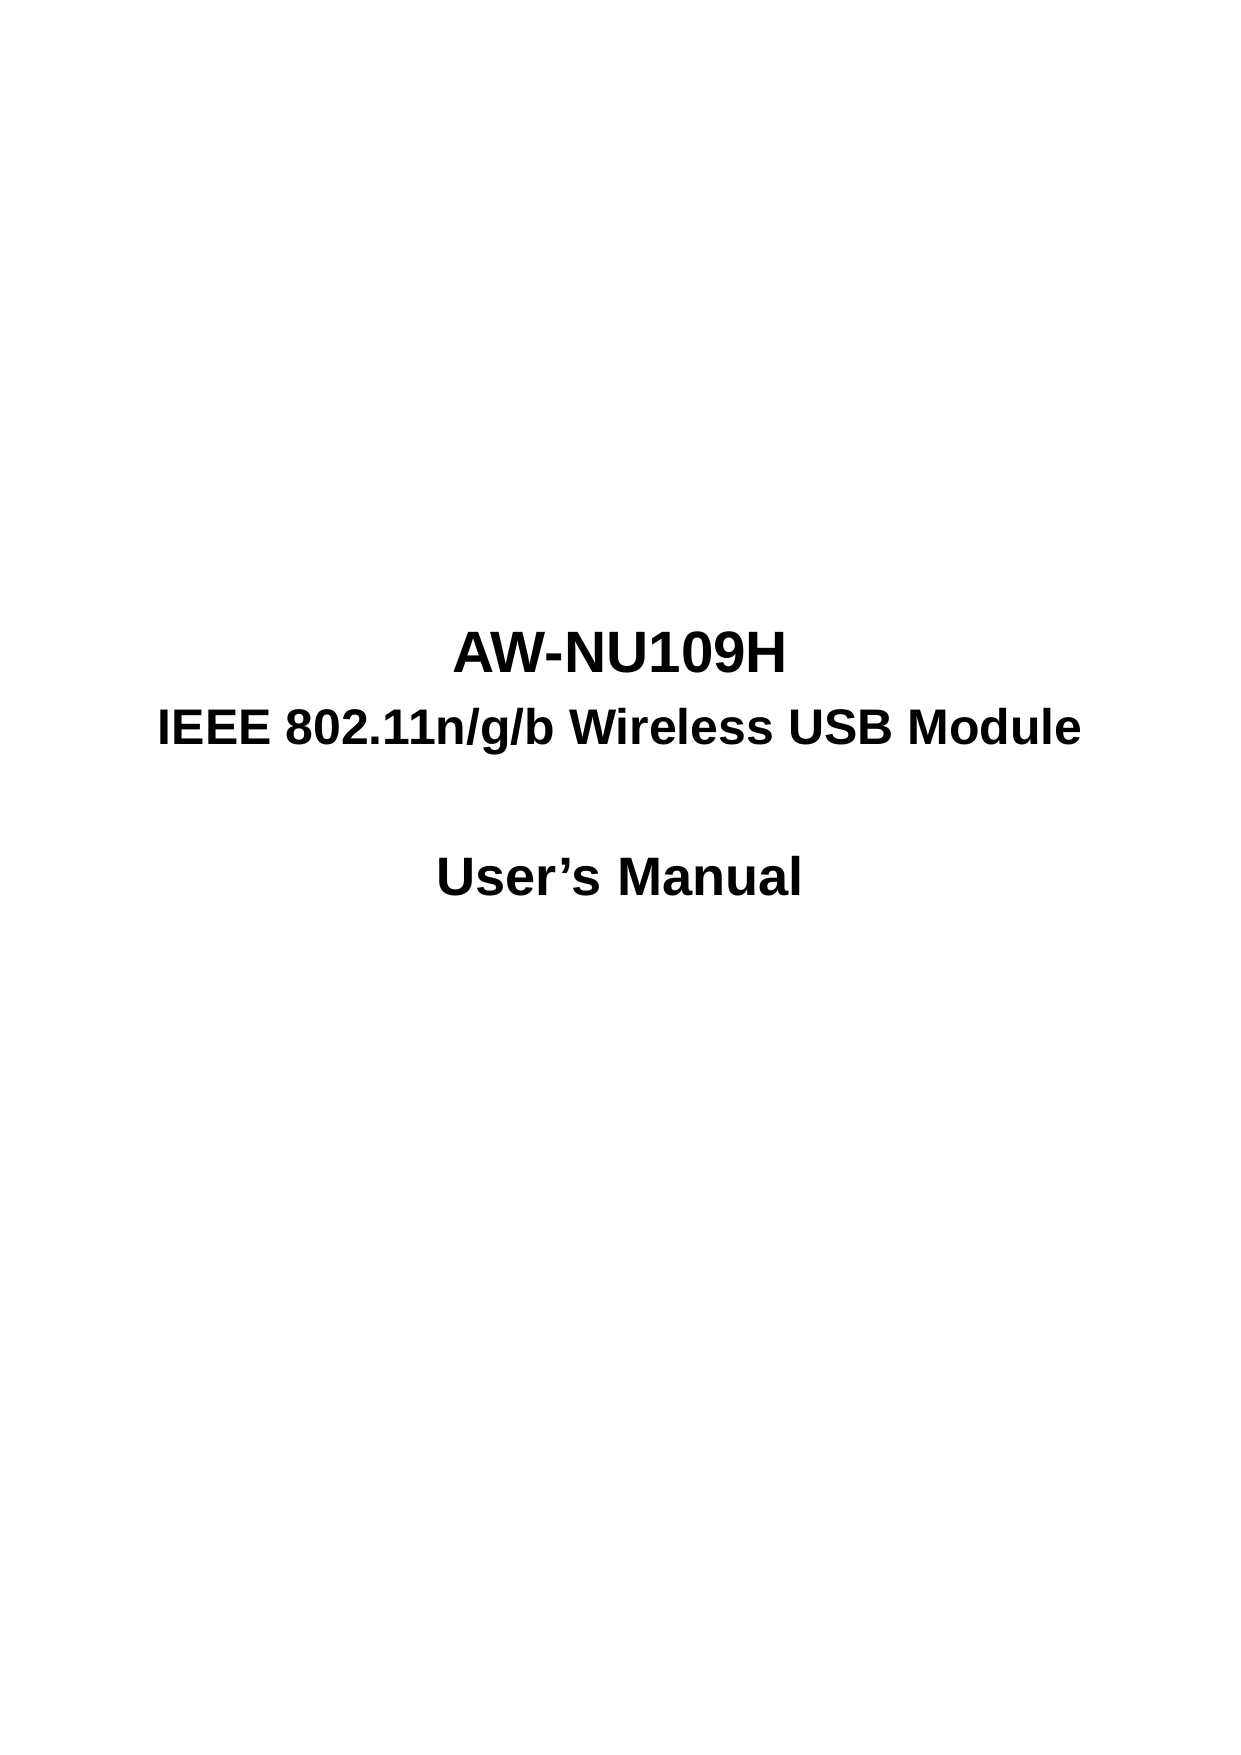              AW-NU109H IEEE 802.11n/g/b Wireless USB Module  User’s Manual           